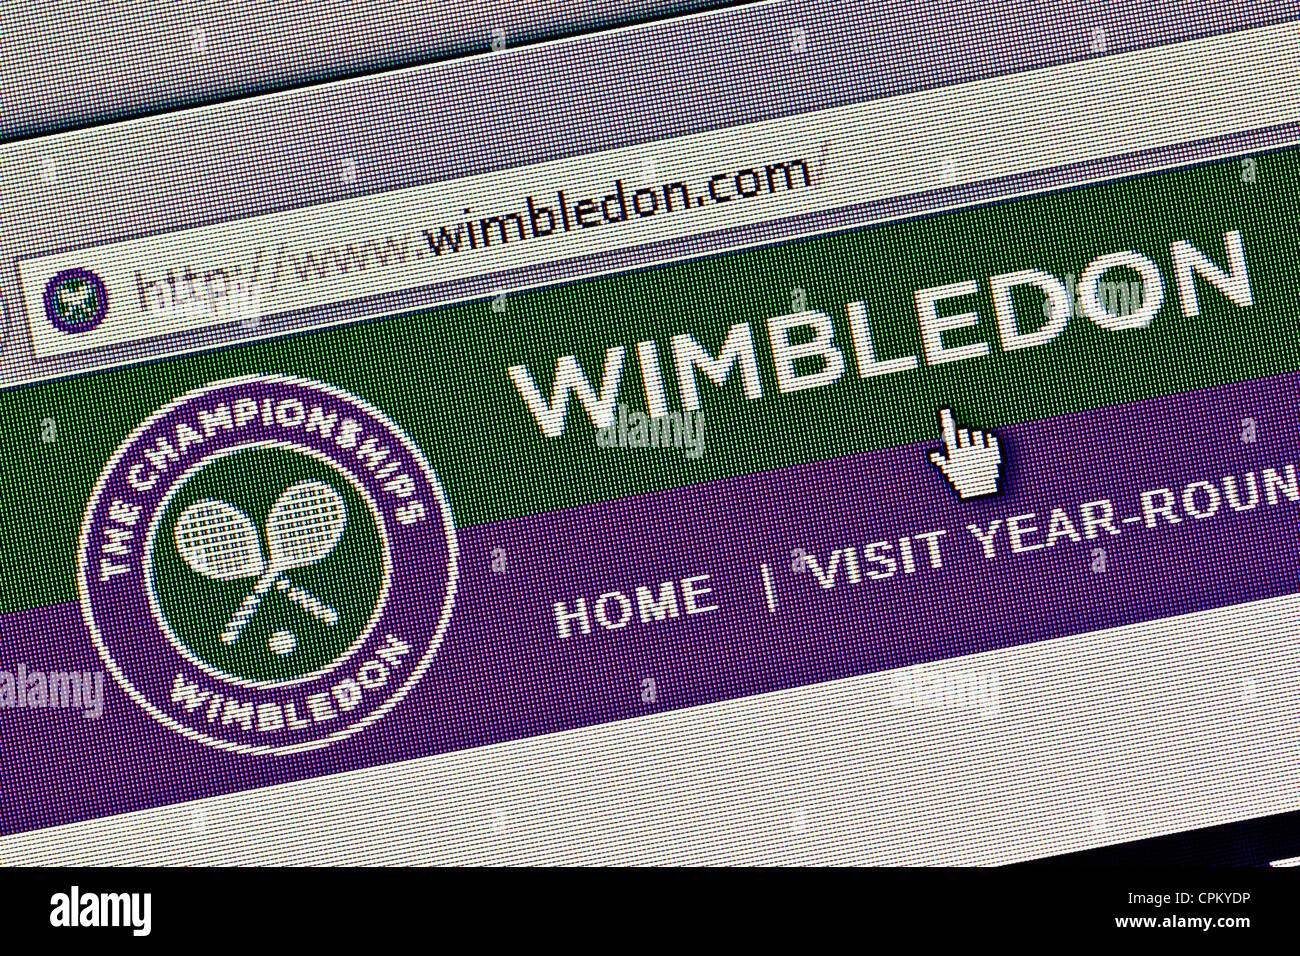 Wimbledon Tennis Club logo and website close up Stock Photo